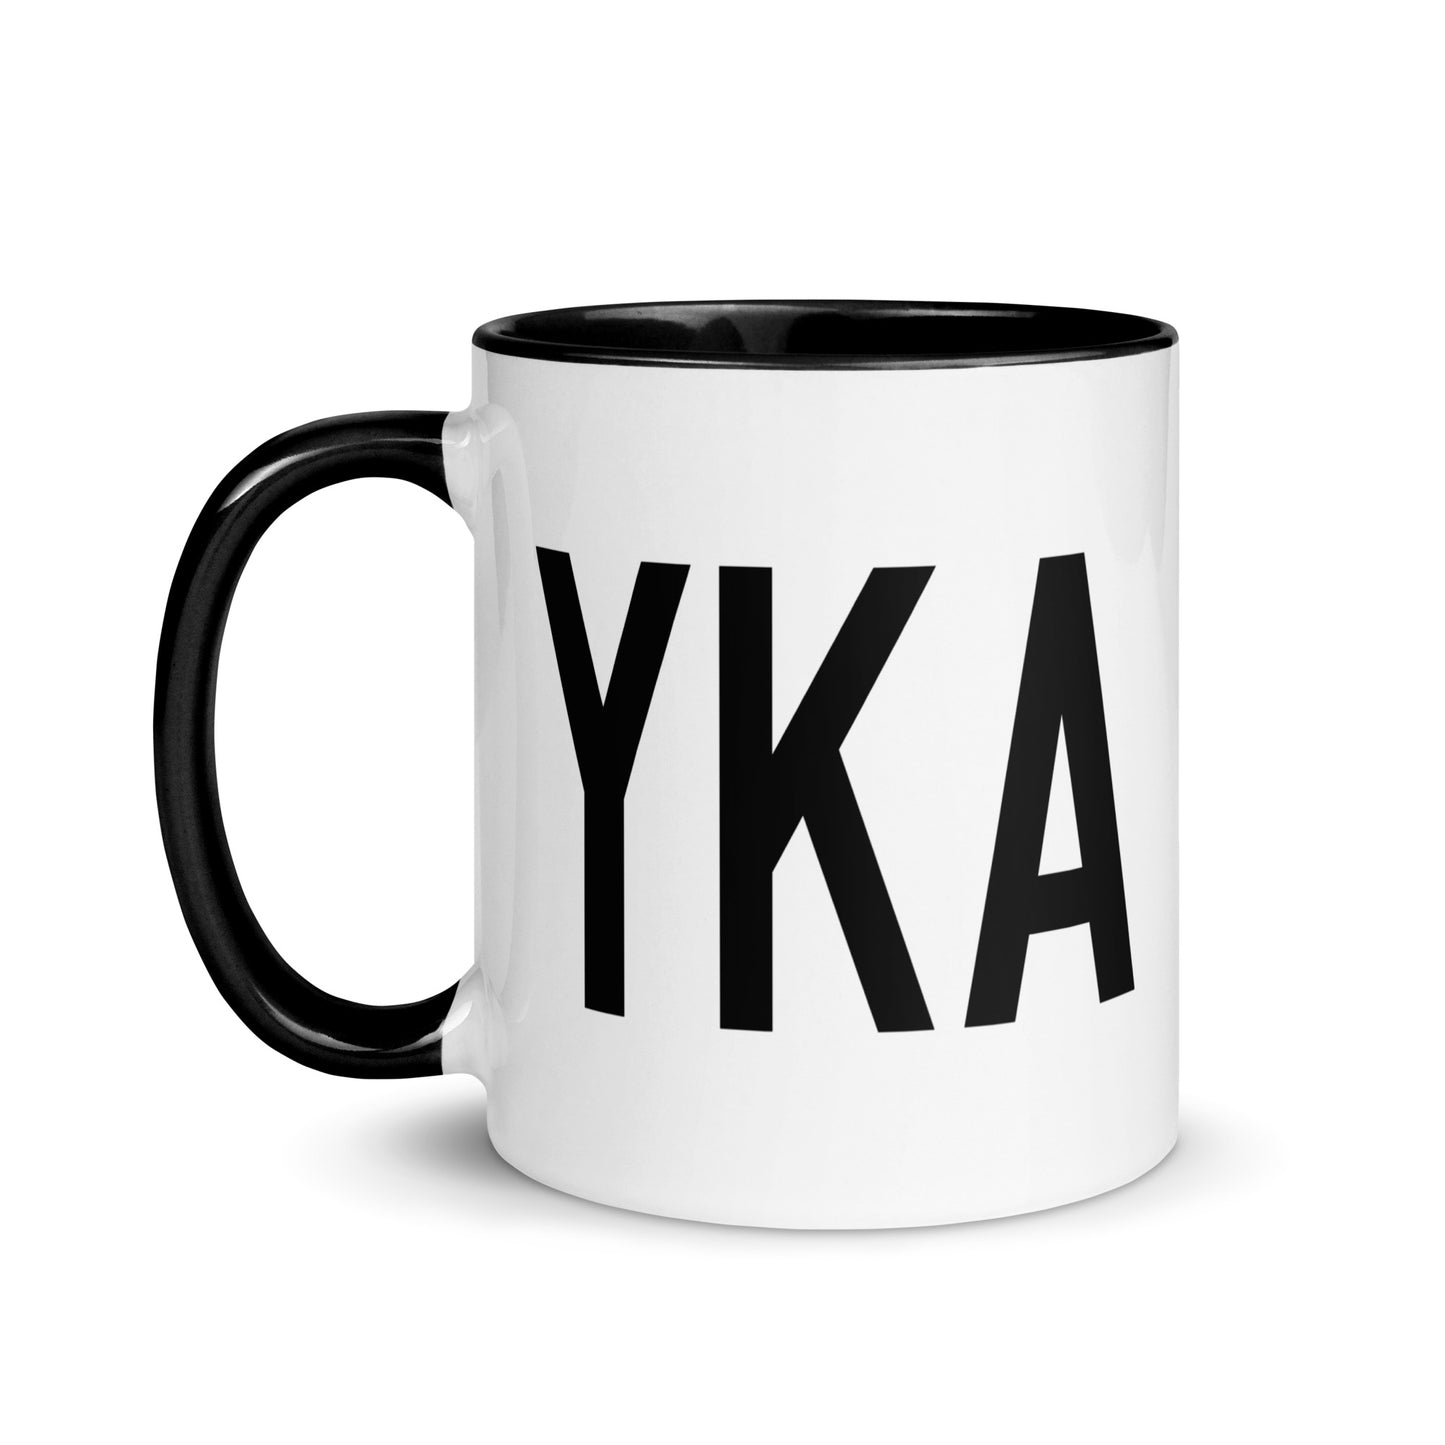 Airport Code Coffee Mug - Black • YKA Kamloops • YHM Designs - Image 03